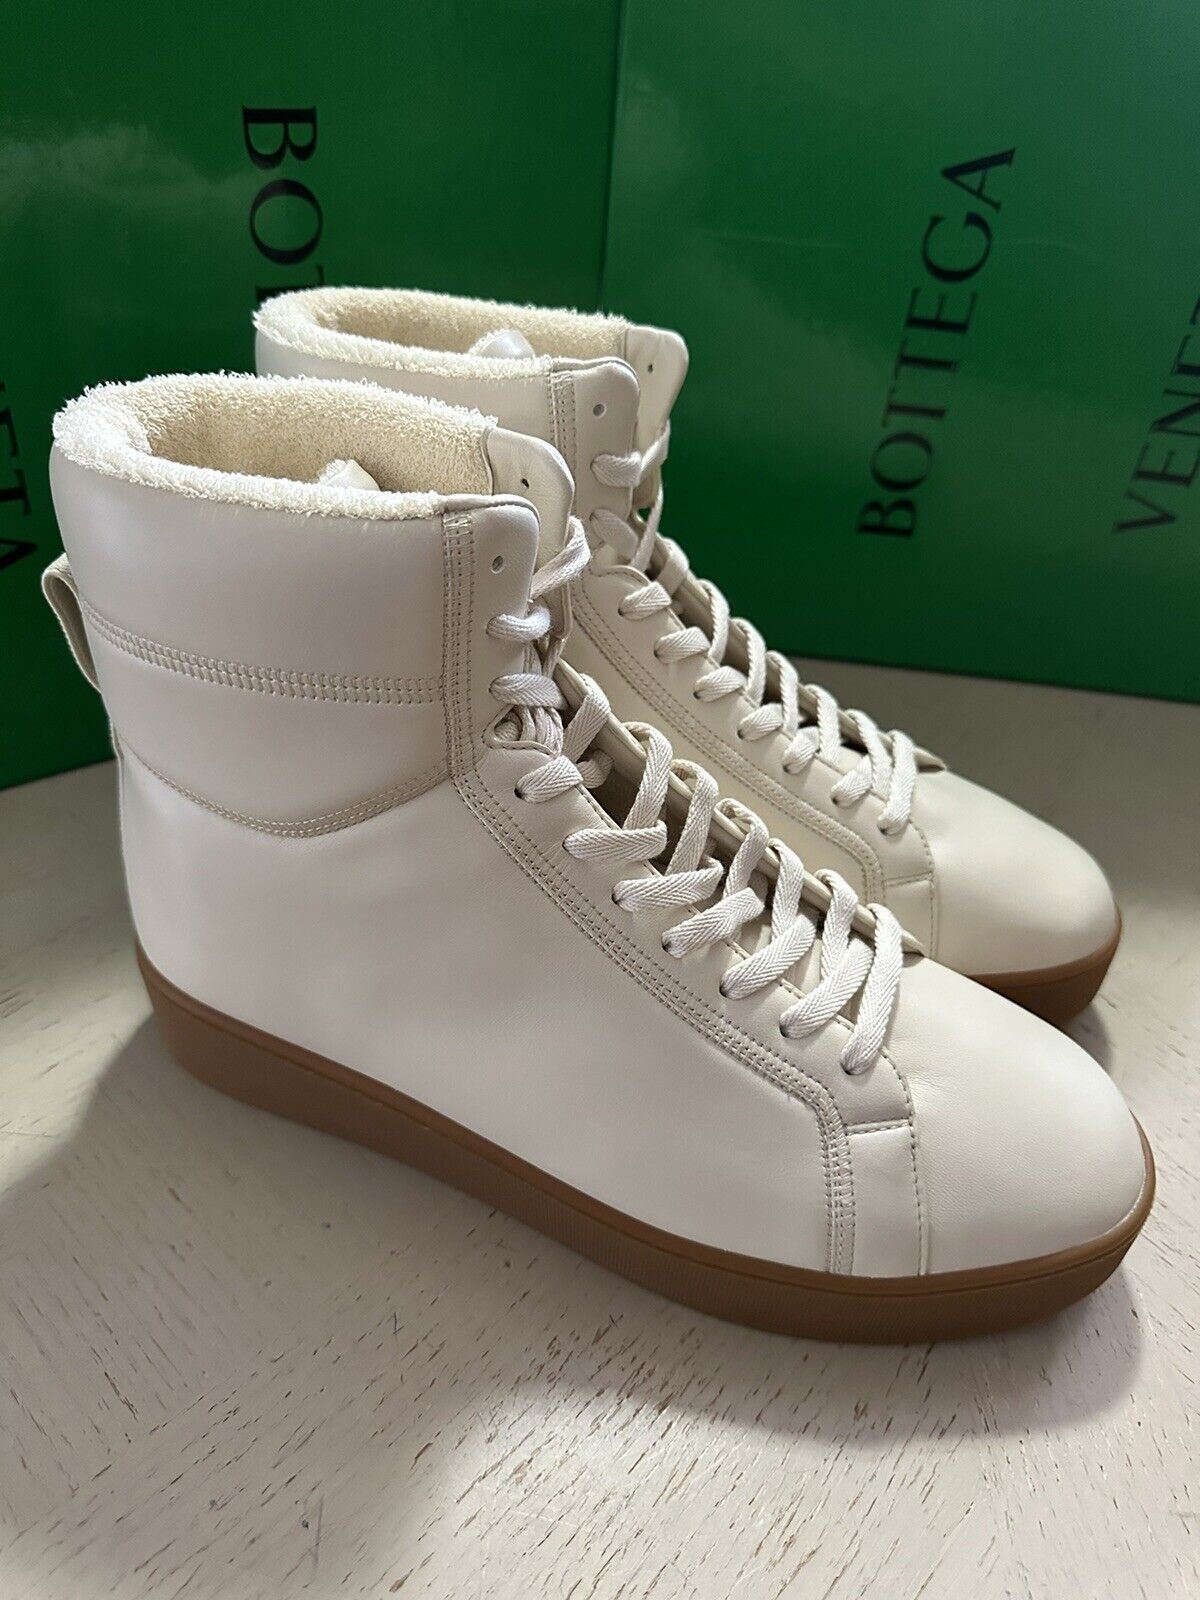 NIB 950 $ Bottega Veneta Herren-Leder-High-Top-Sneaker-Schuhe Weiß 8 US/41 Eu